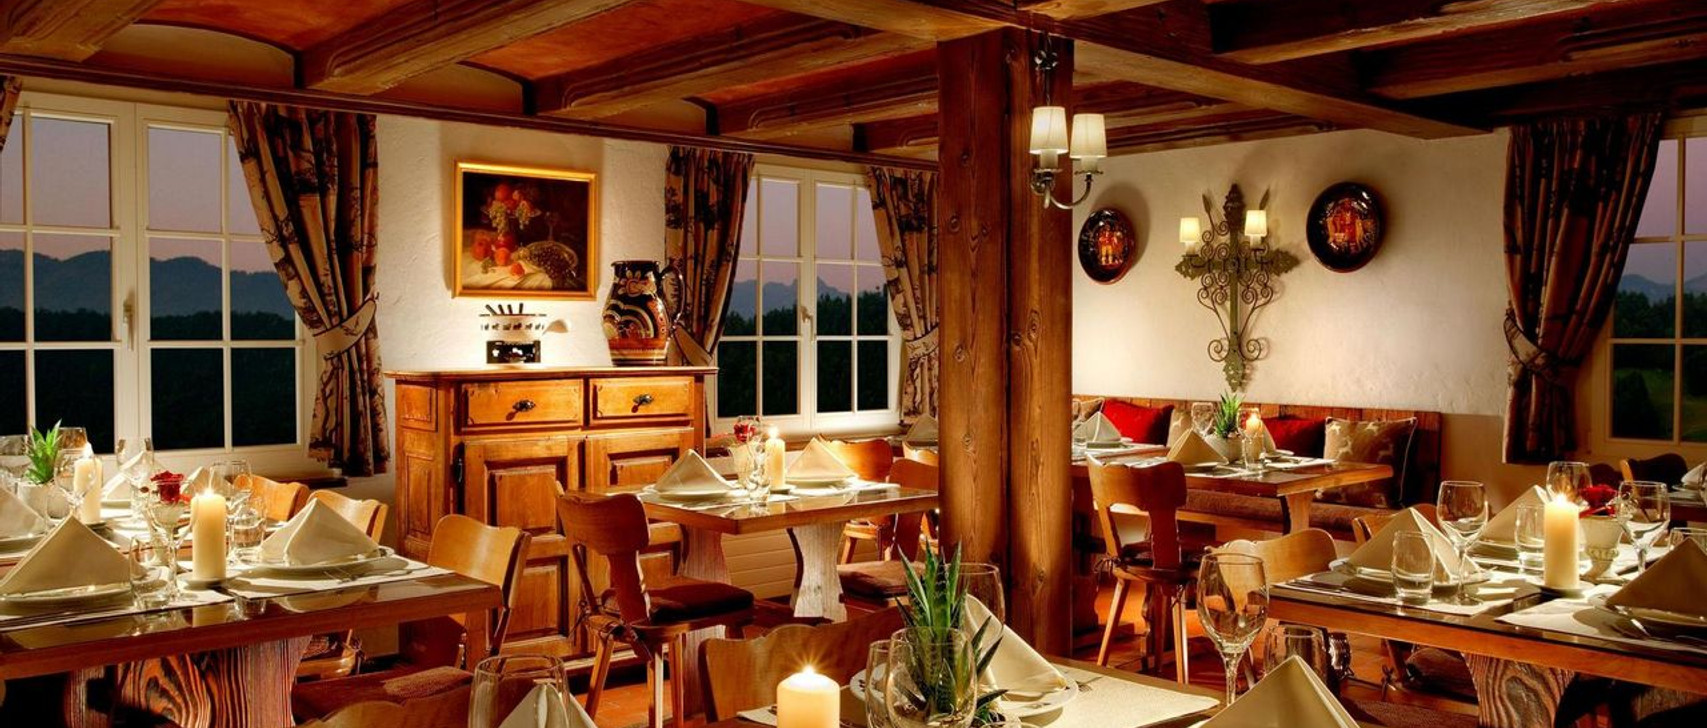 Taverne-1879-restaurant-essen-trinken-buergenstock.jpg